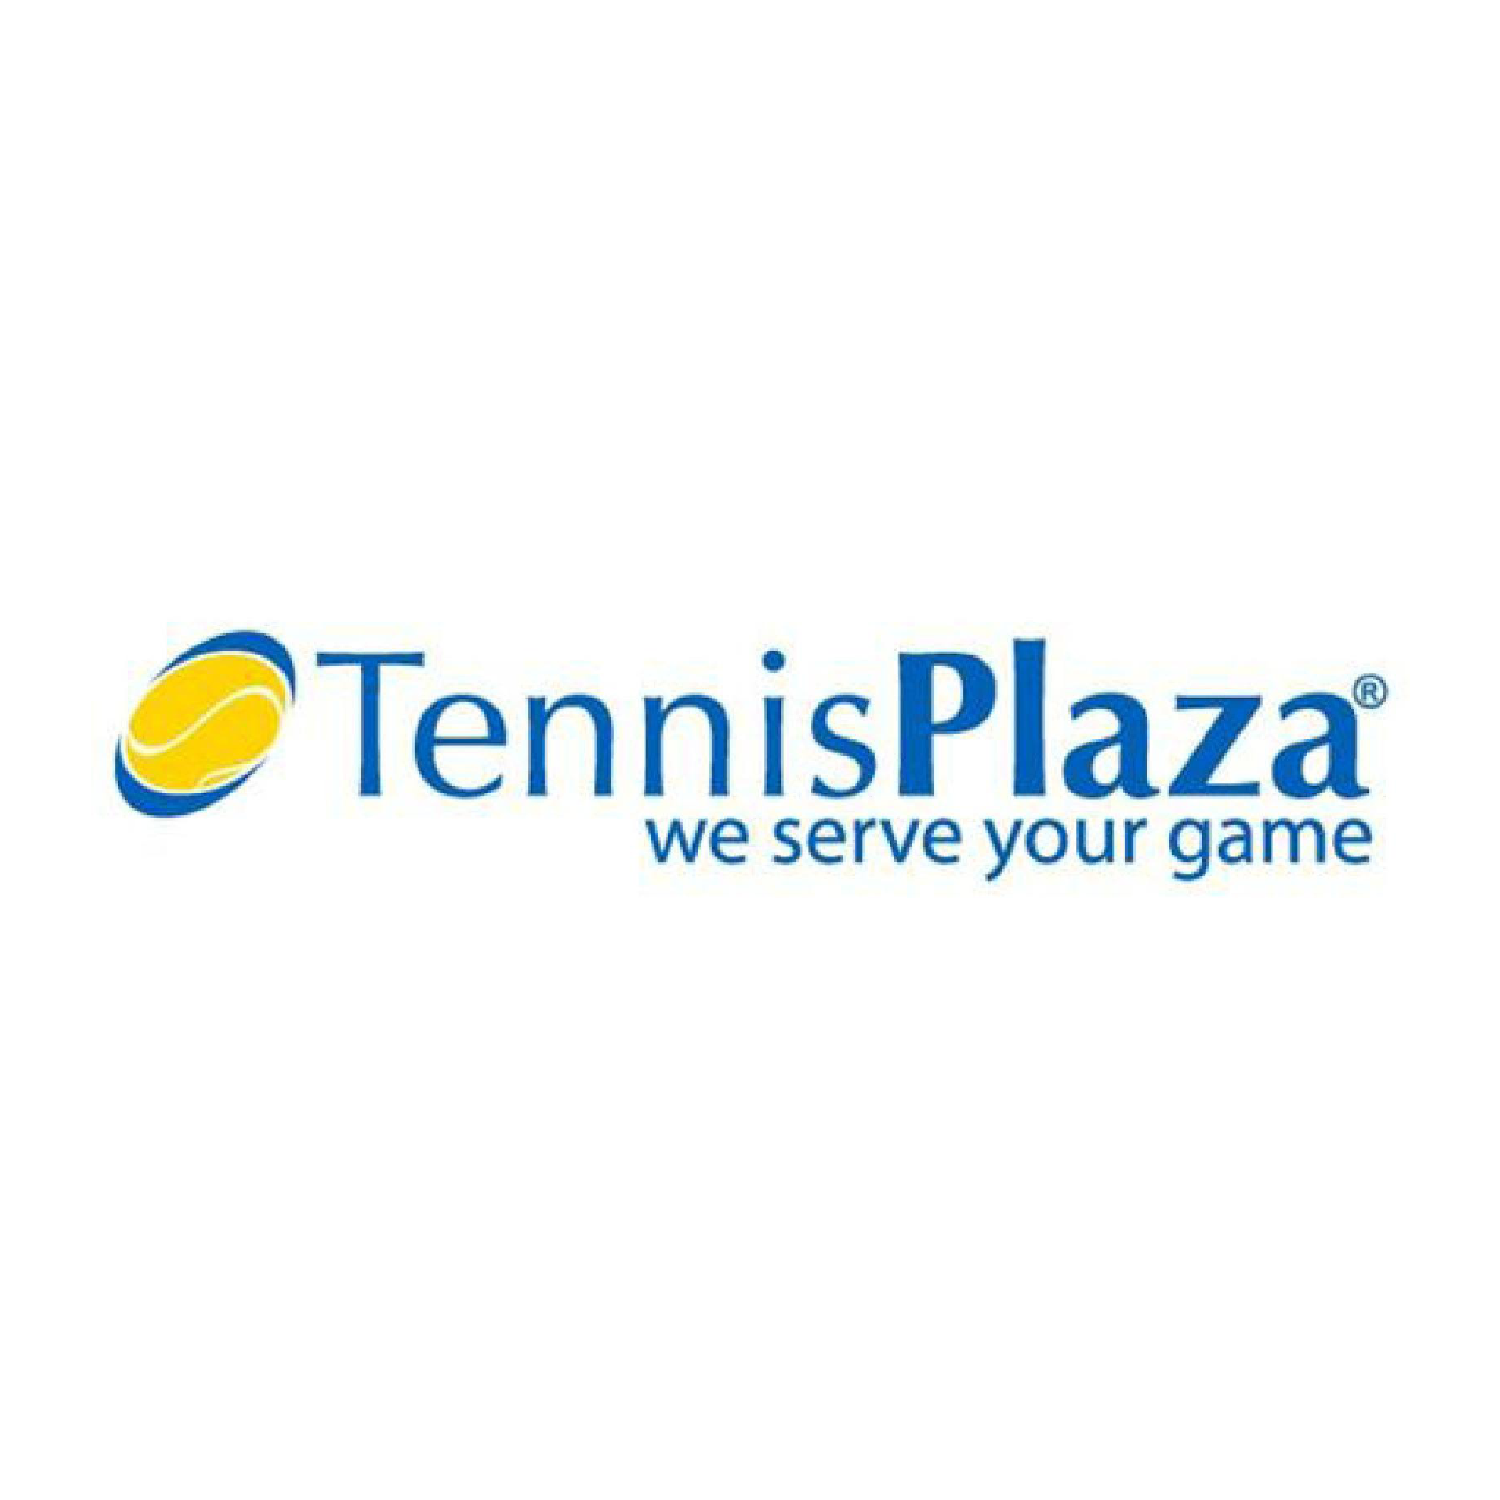 www.tennisplaza.com